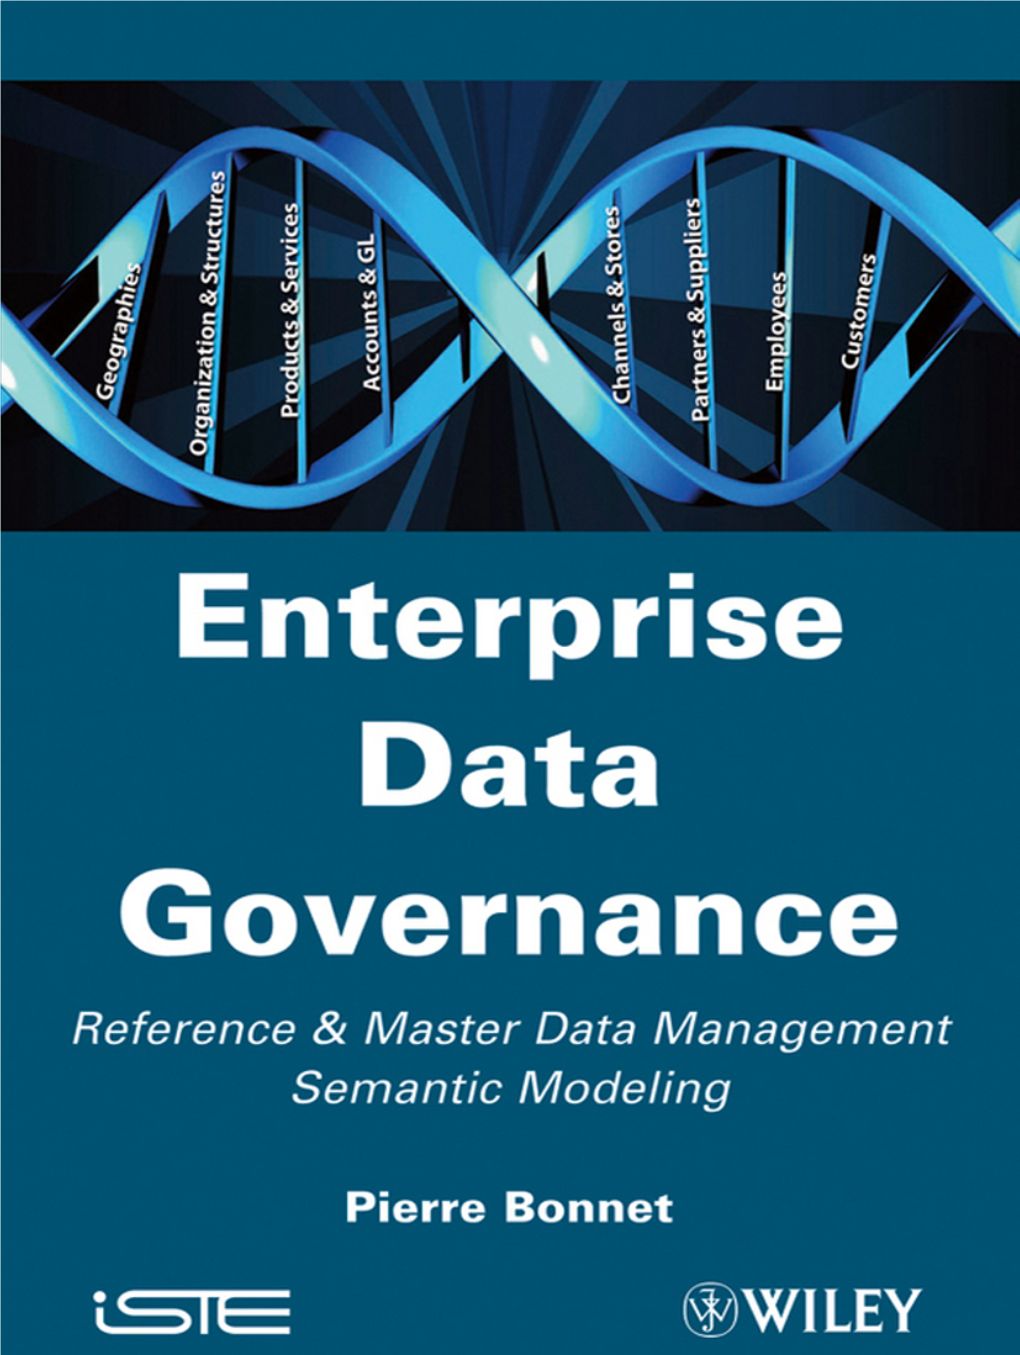 Enterprise Data Governance